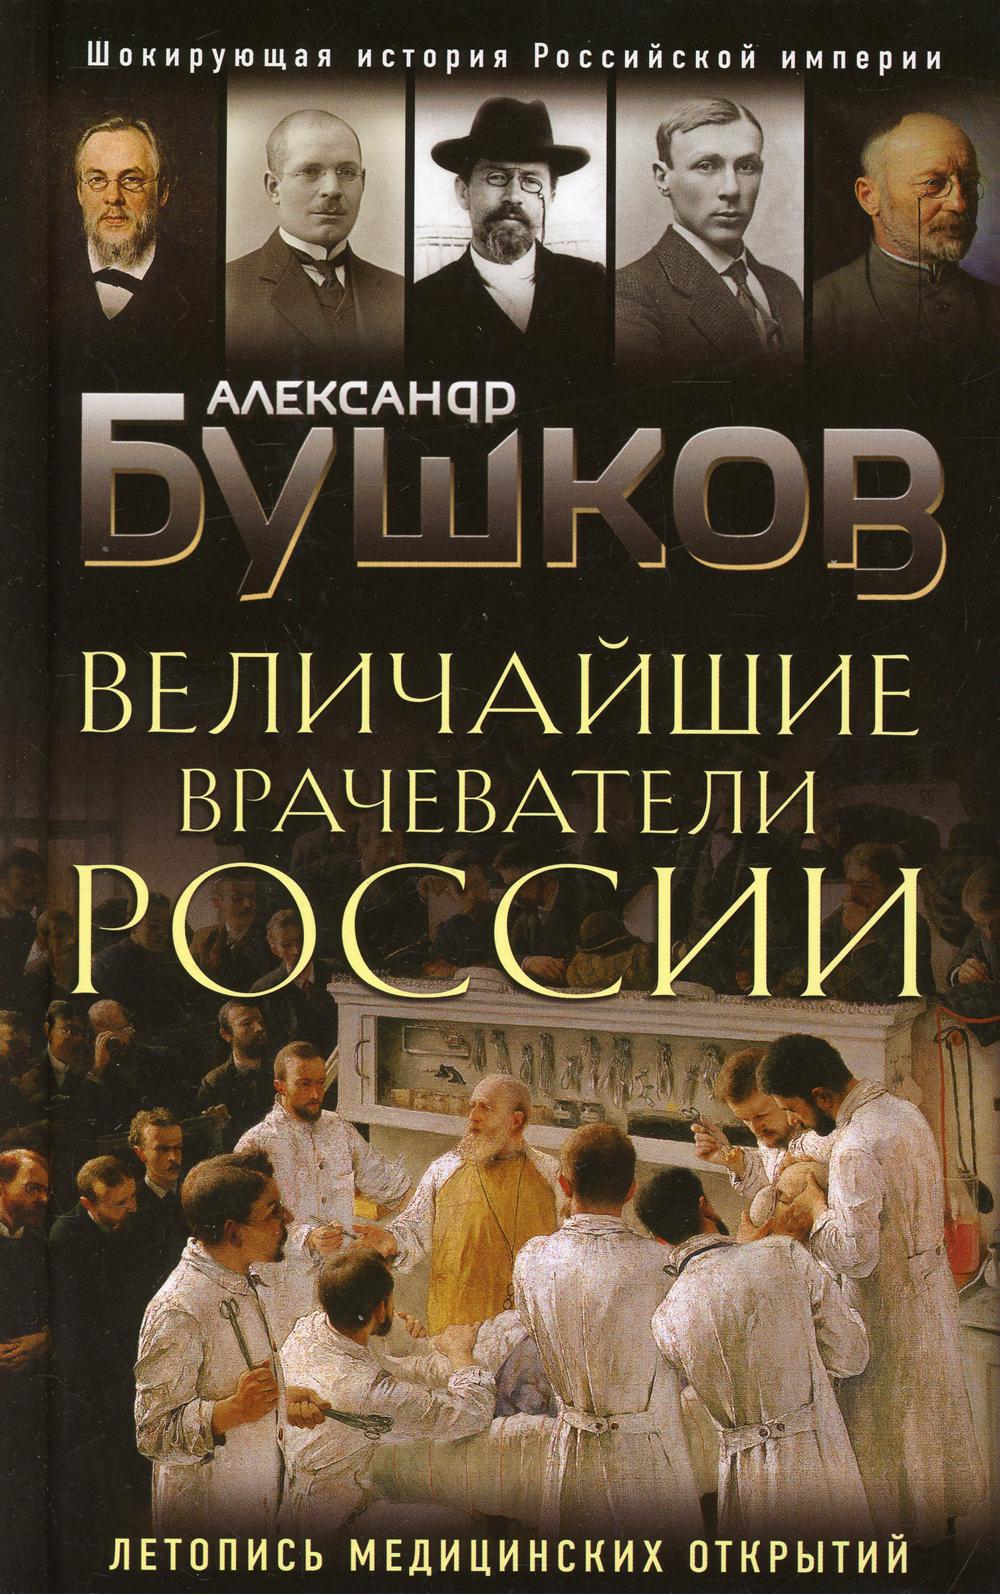 Величайшие врачеватели России. Летопись исторических медицинских открытий